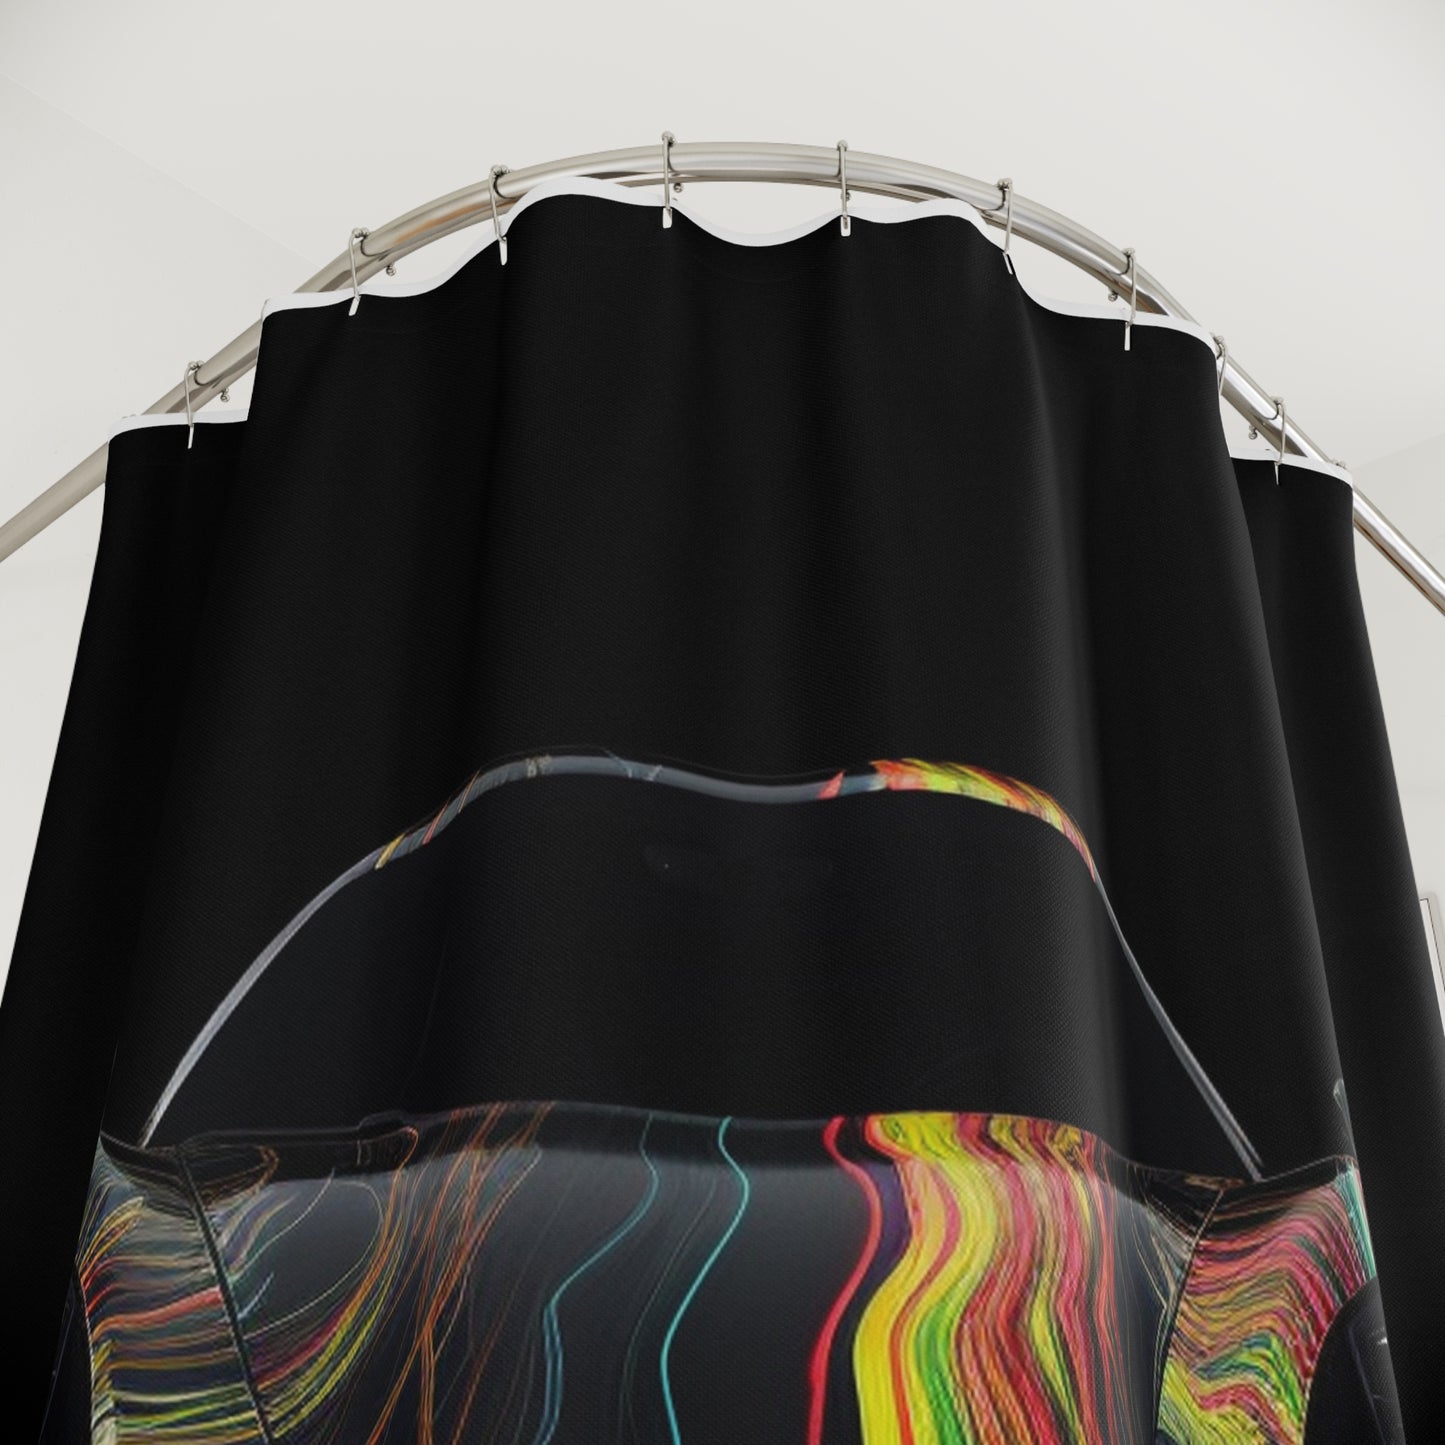 Polyester Shower Curtain Porsche Line 2